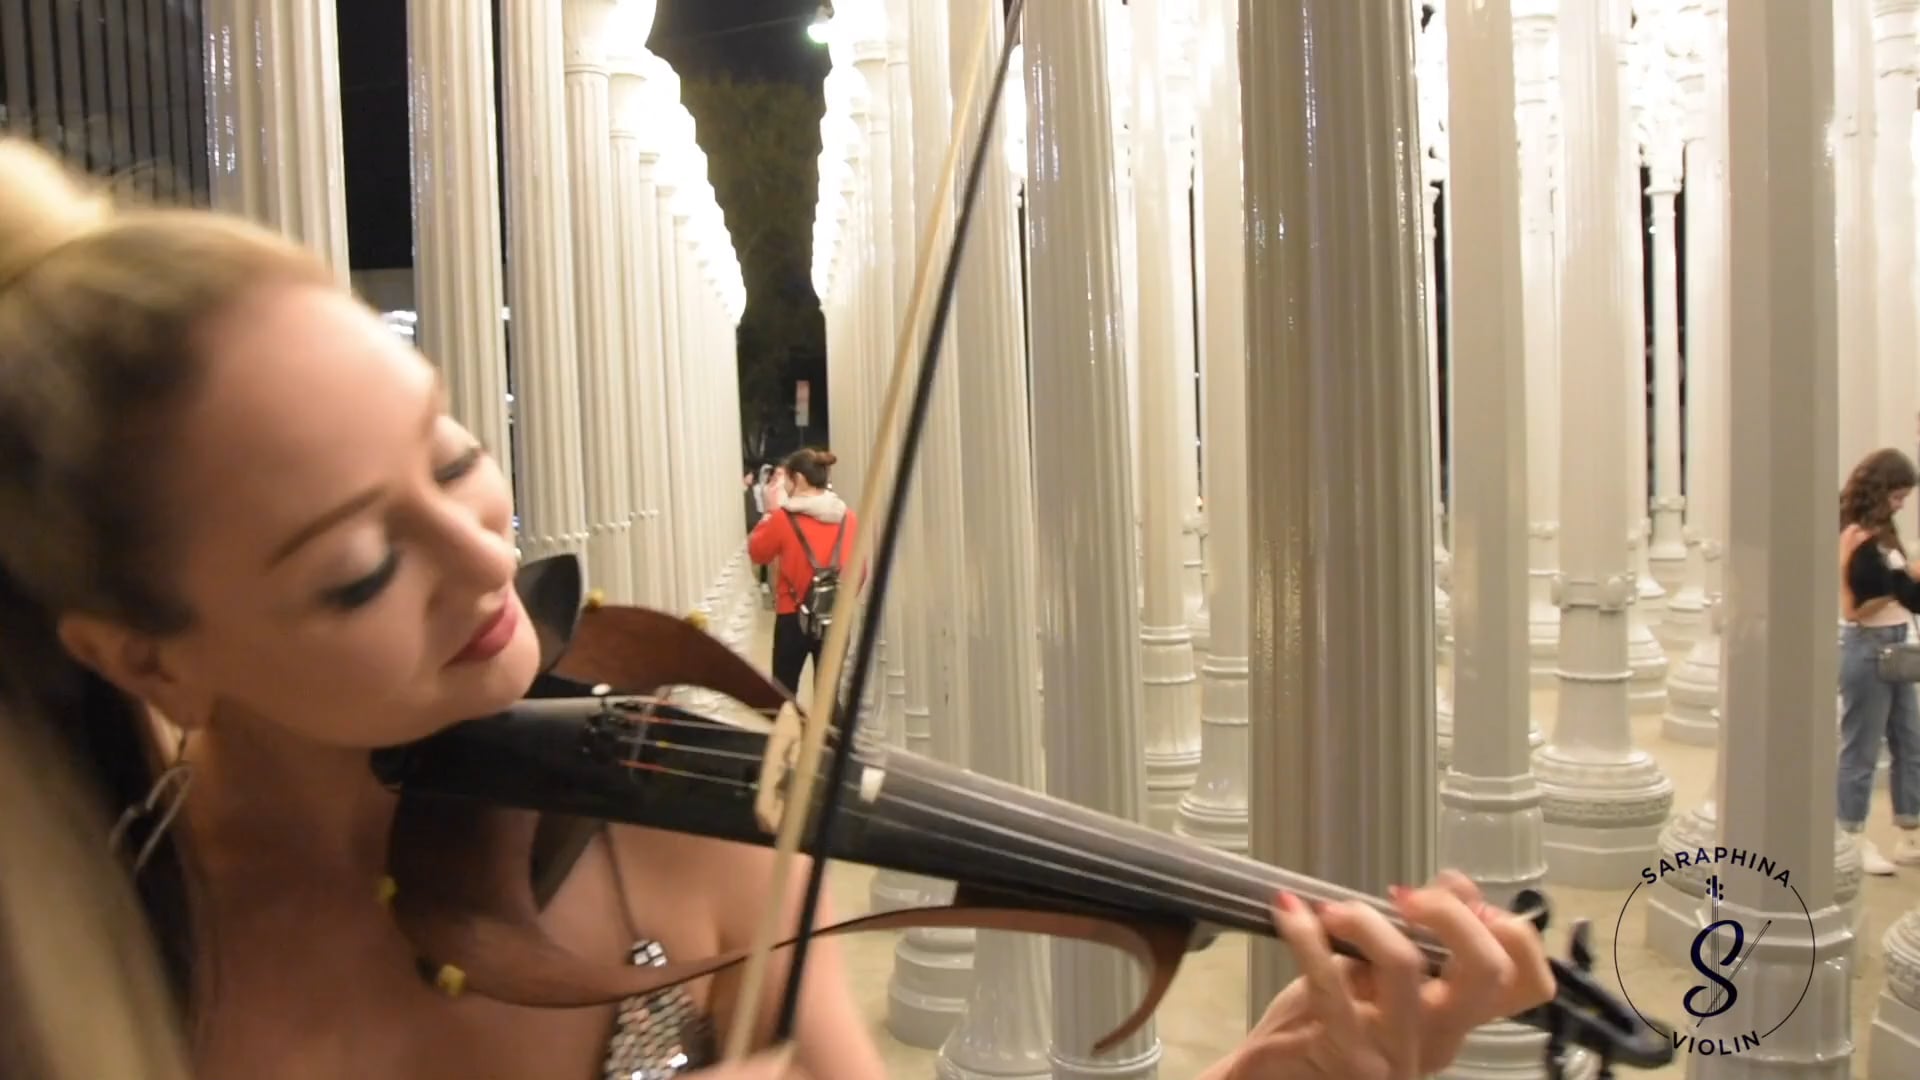 Saraphina Violin Promo video for instagram